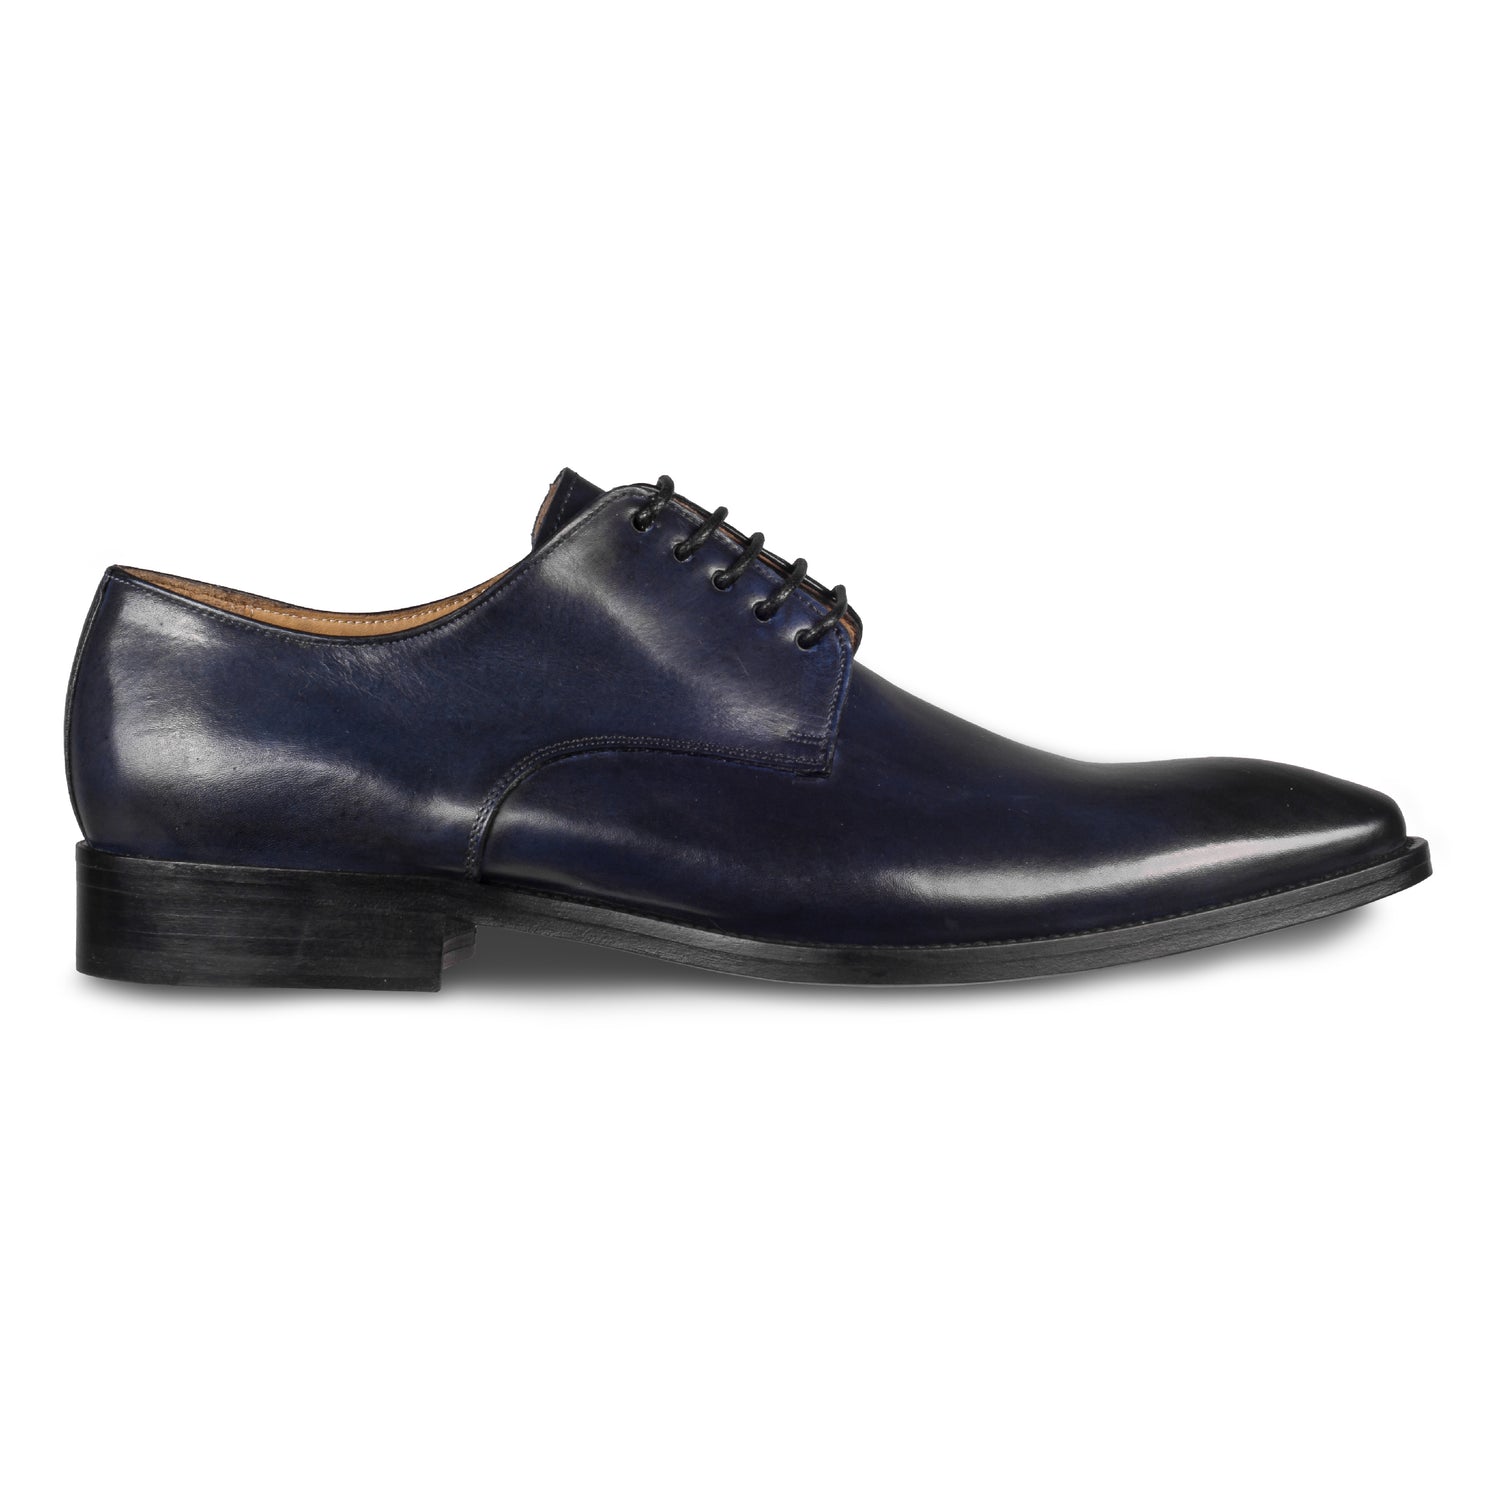 BRECOS – Italienische Herren Anzugschuhe, Plain Derby Schnürer in dunkel blau. Handgefertigt und durchgenäht. Seitliche Ansicht der Außenseite rechter Schuh.